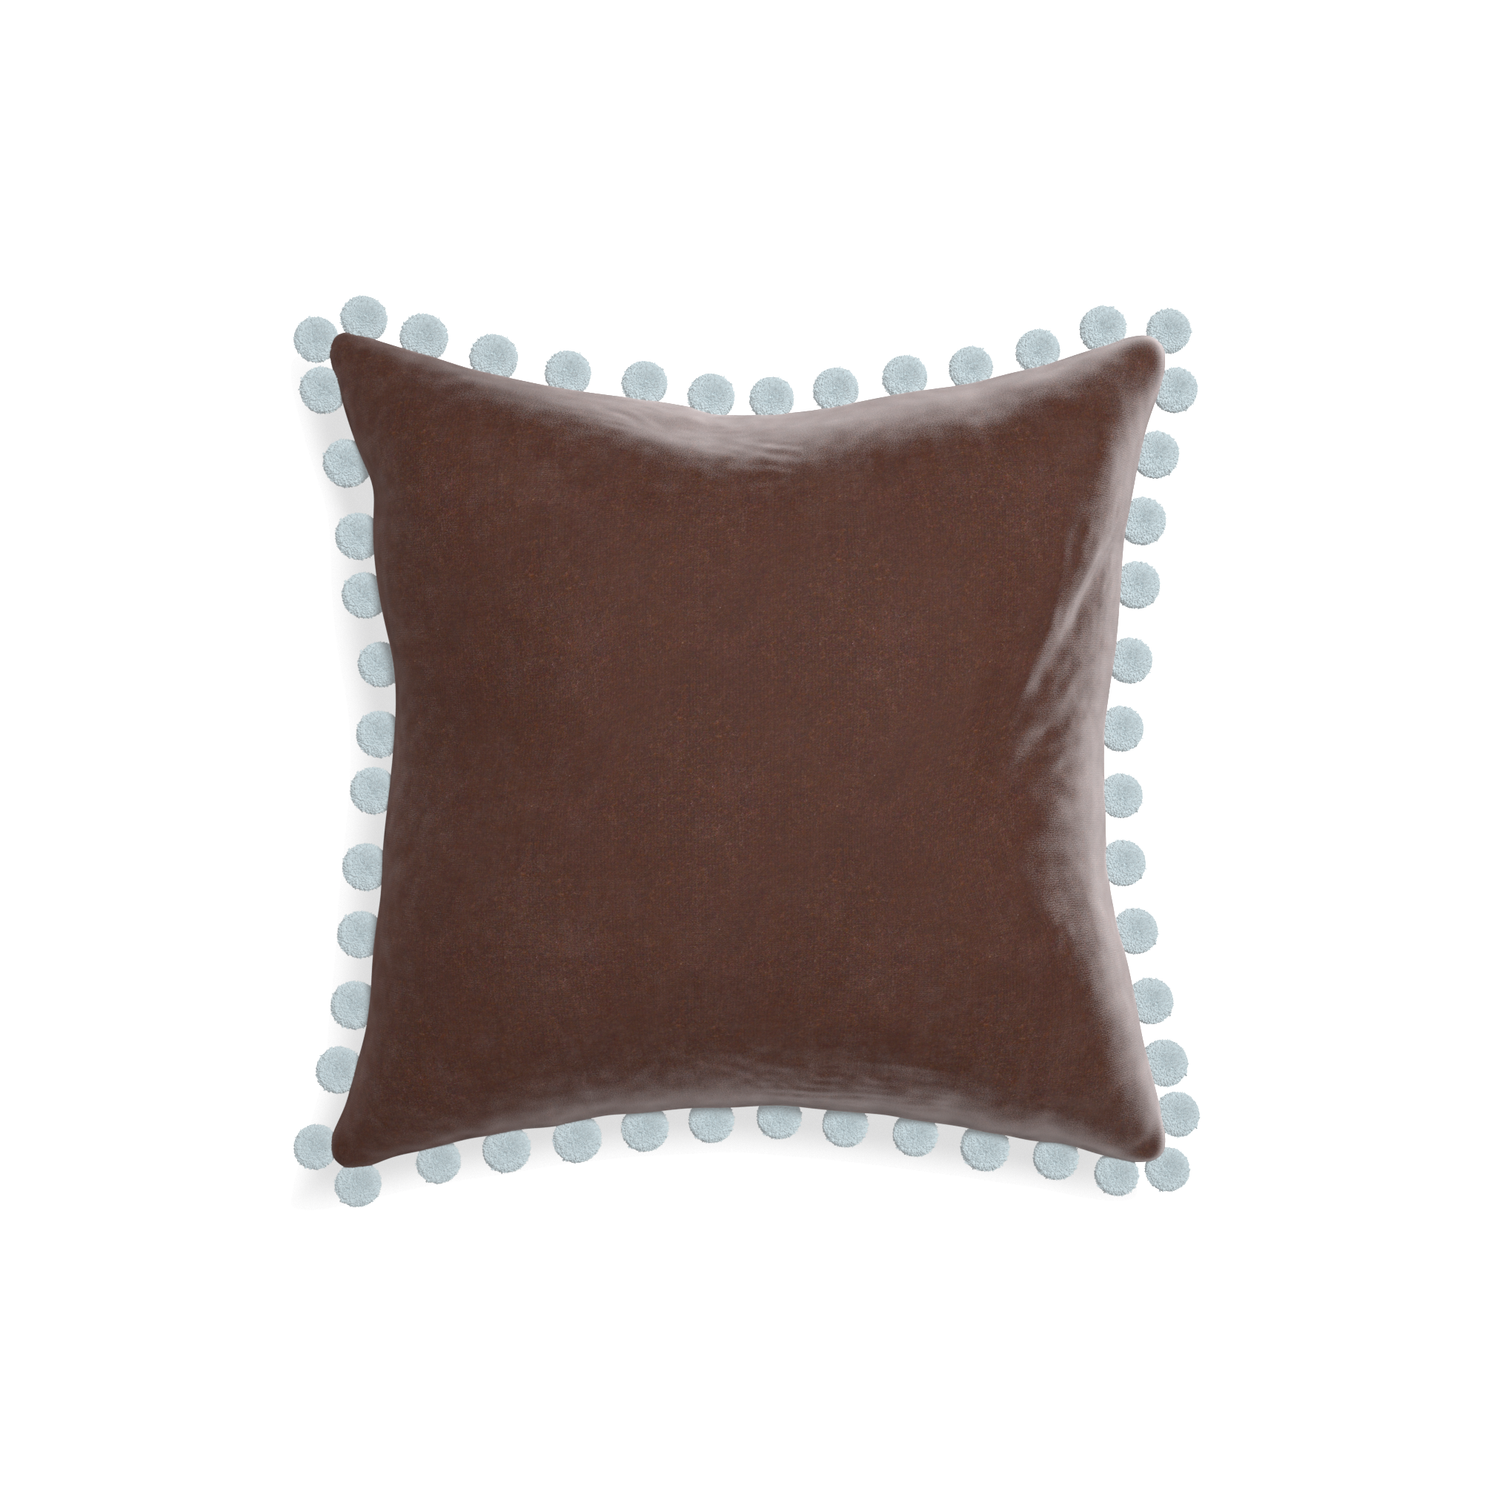 square brown velvet pillow with light blue pom poms